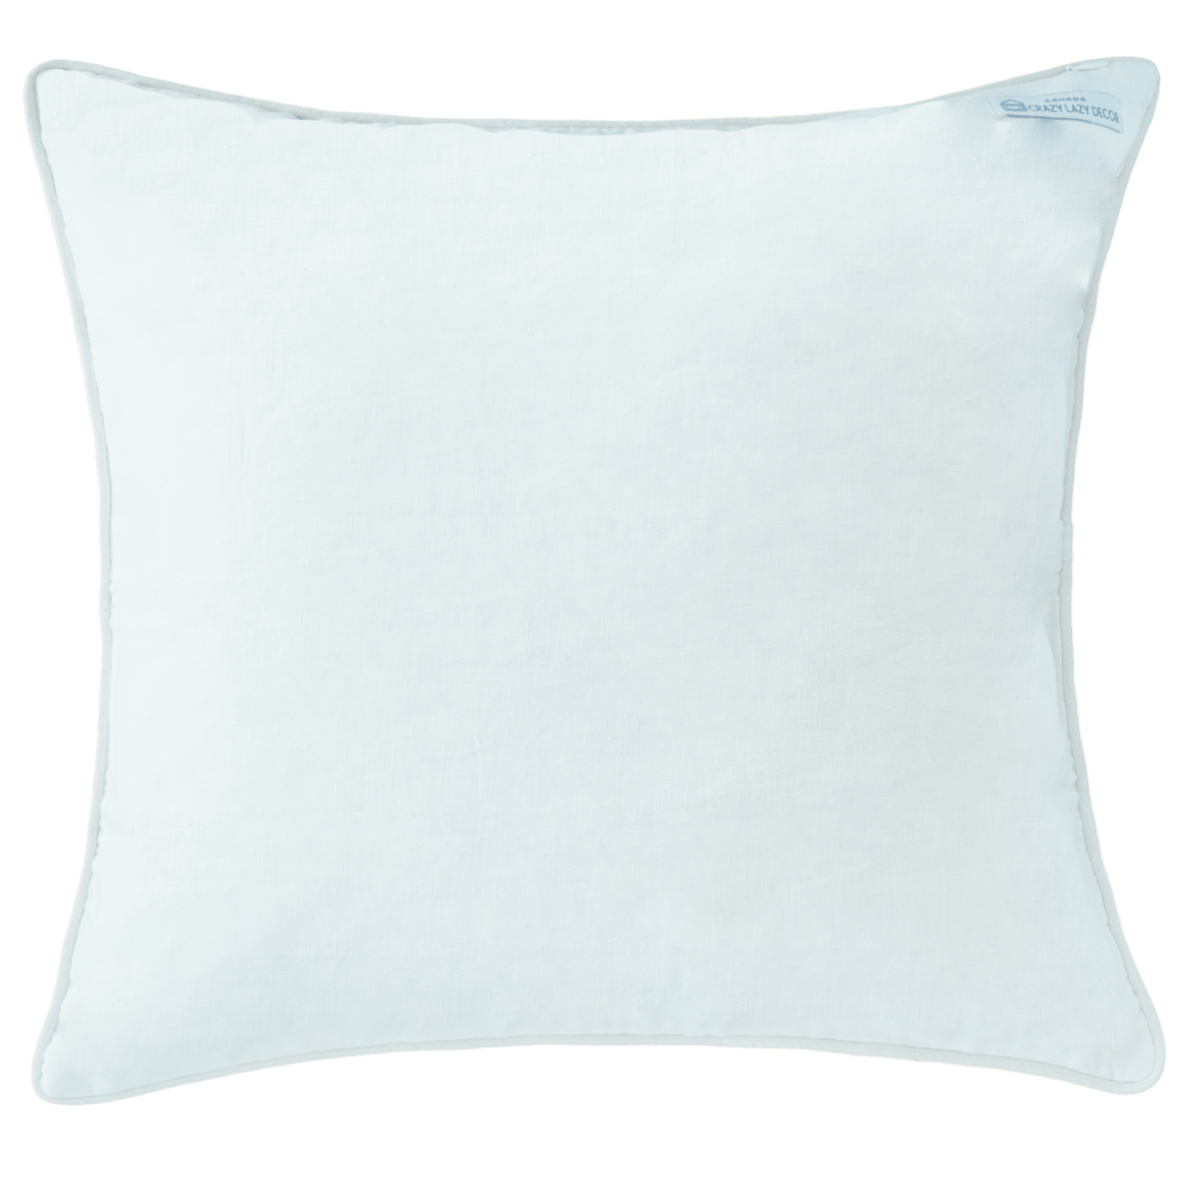 tricolor decoartive throw 20" 20" pillow